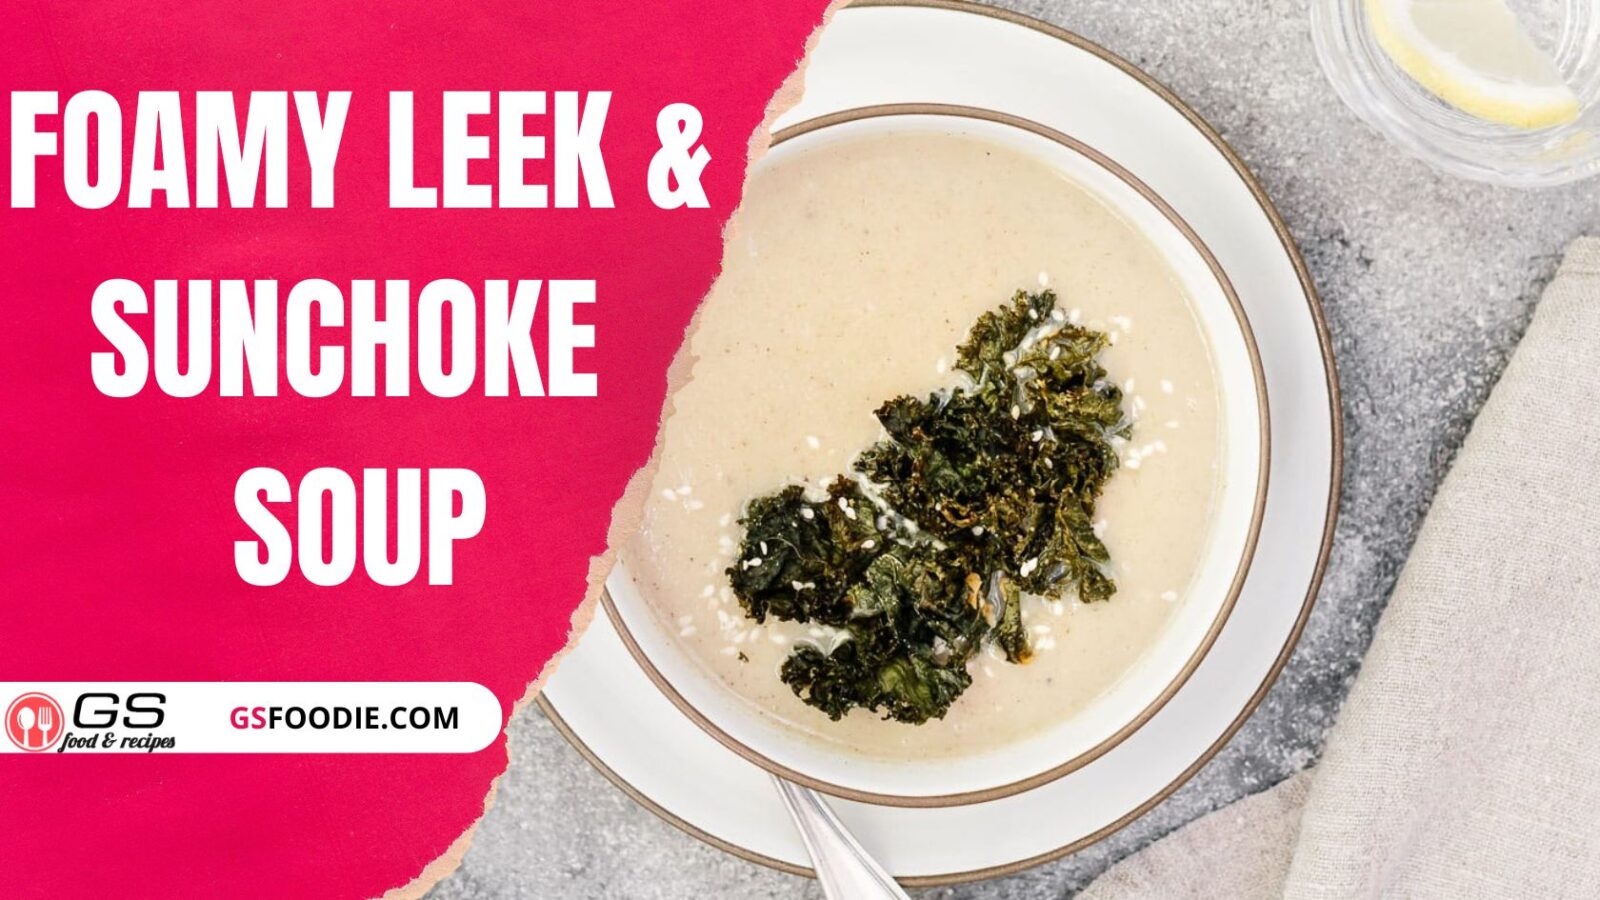 Foamy Leek & Sunchoke Soup